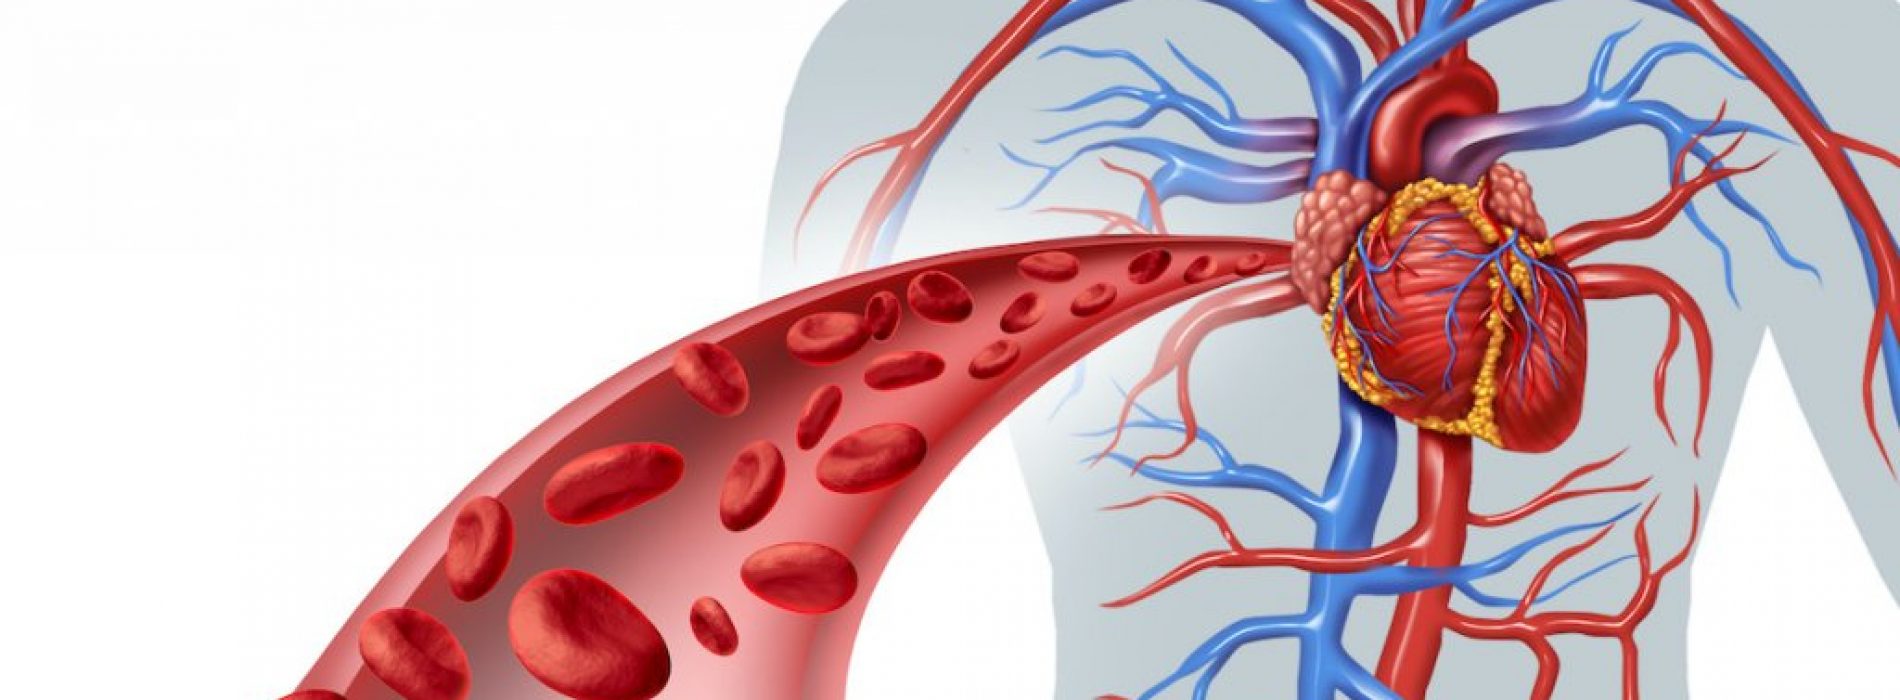 9 kruiden om de bloedcirculatie en hartfunctie te verbeteren